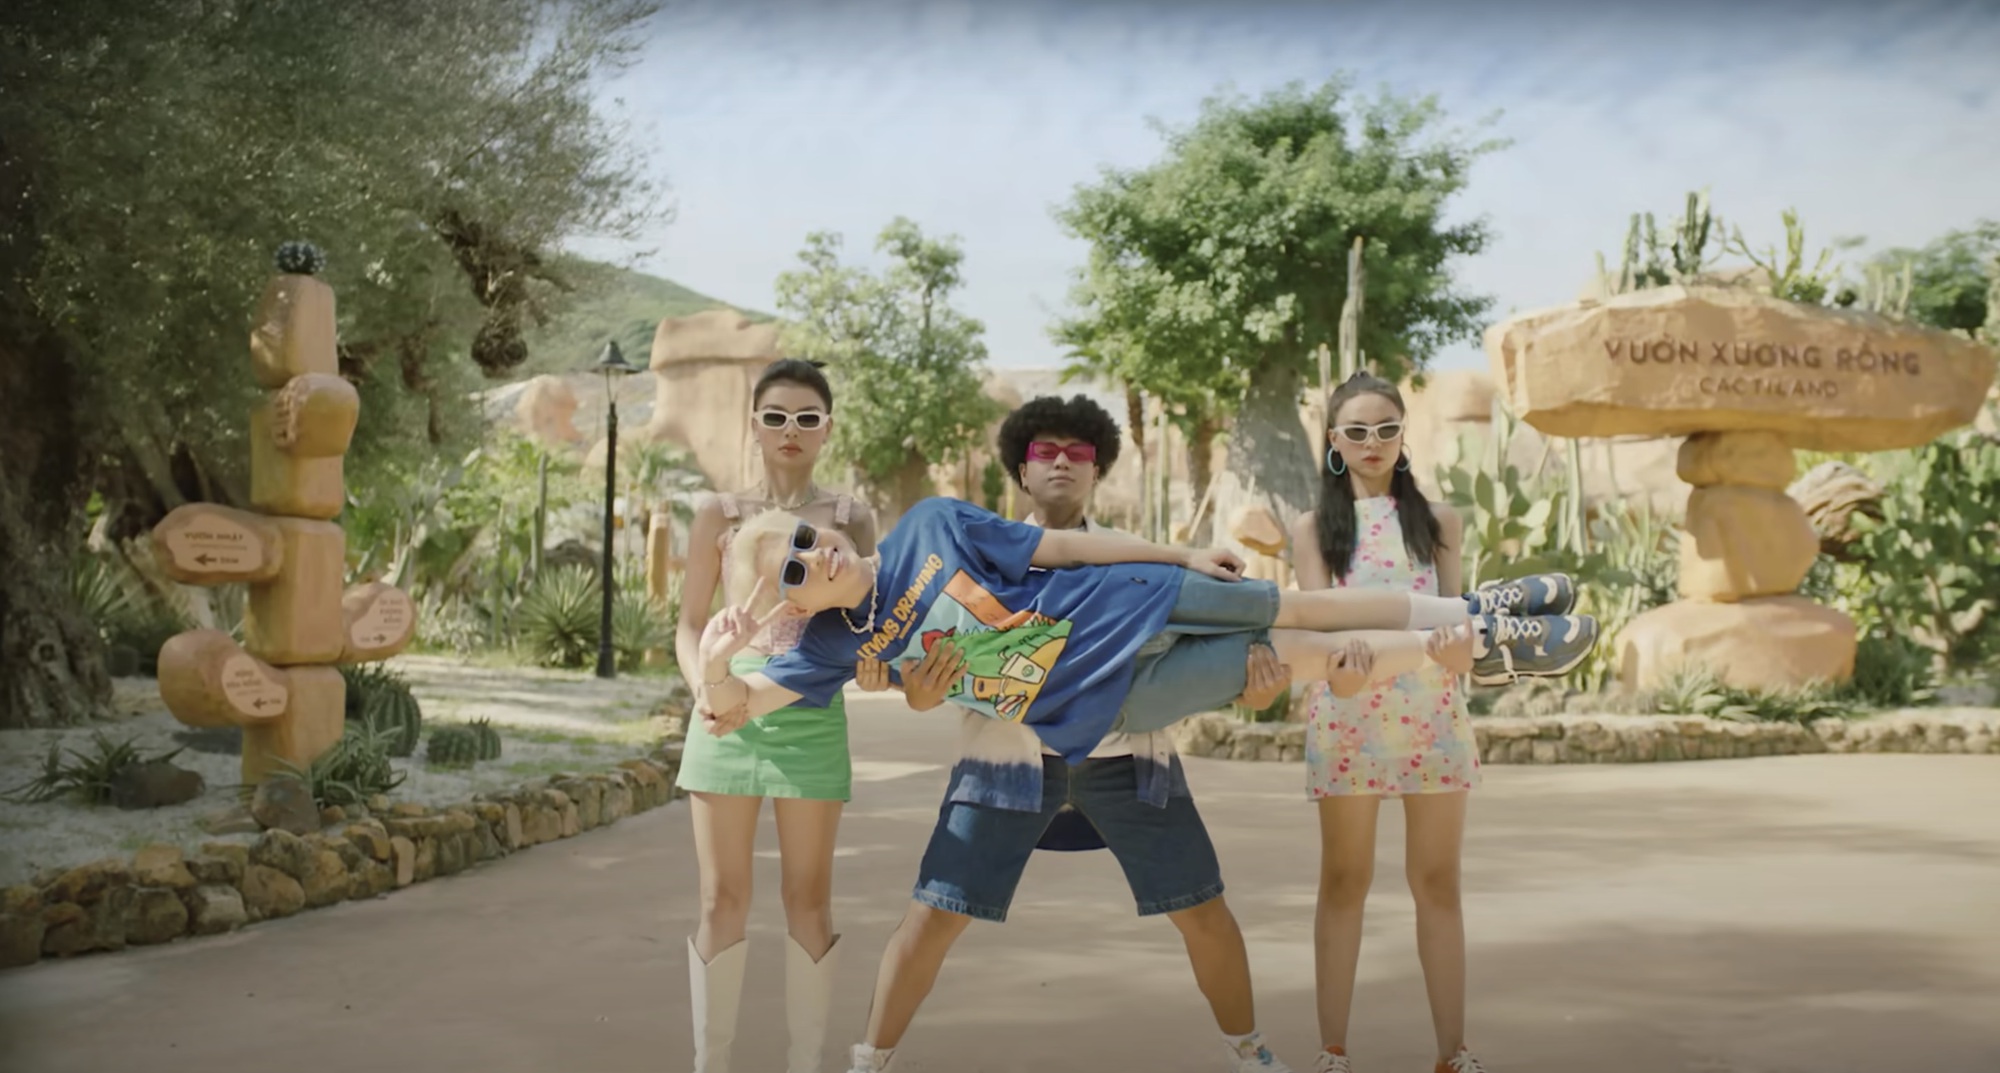 Vinpearl Nha Trang - bí quyết giúp MV “Mùa hè tuyệt vời” đẹp như  - Ảnh 5.